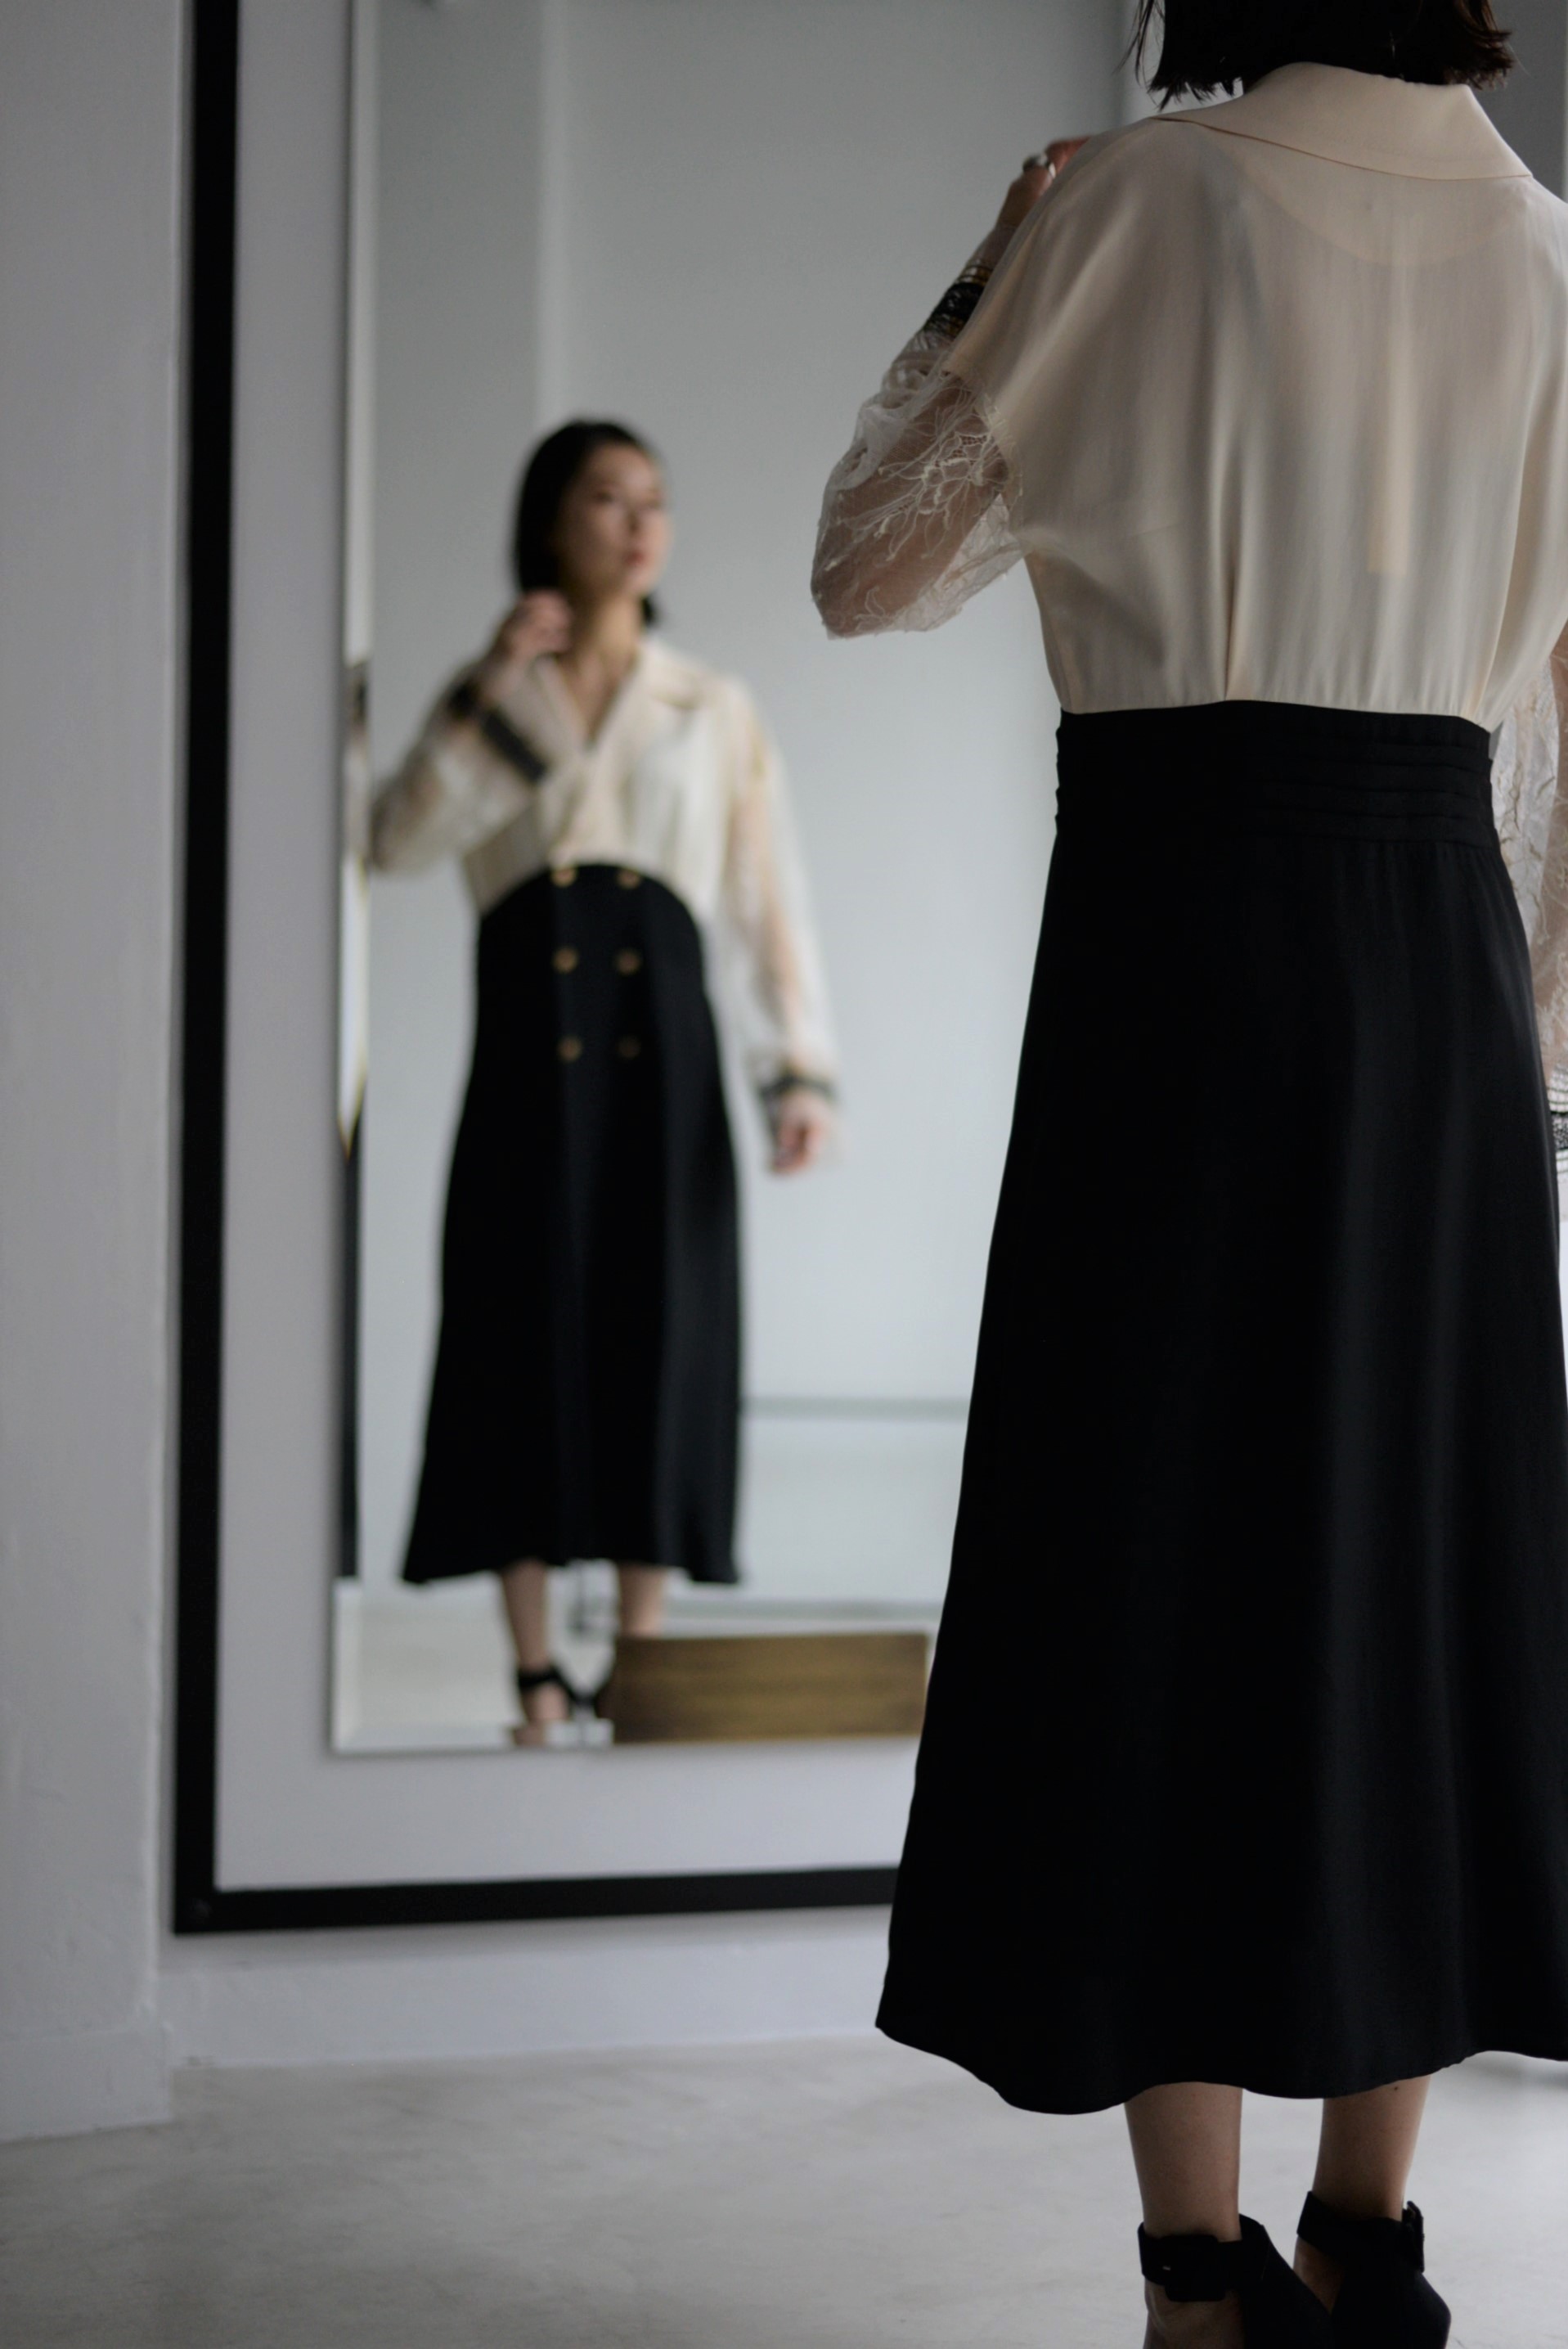 マニッシュさと上品さを併せ持つドレス 【STAIR】 | ROOM211 online shop